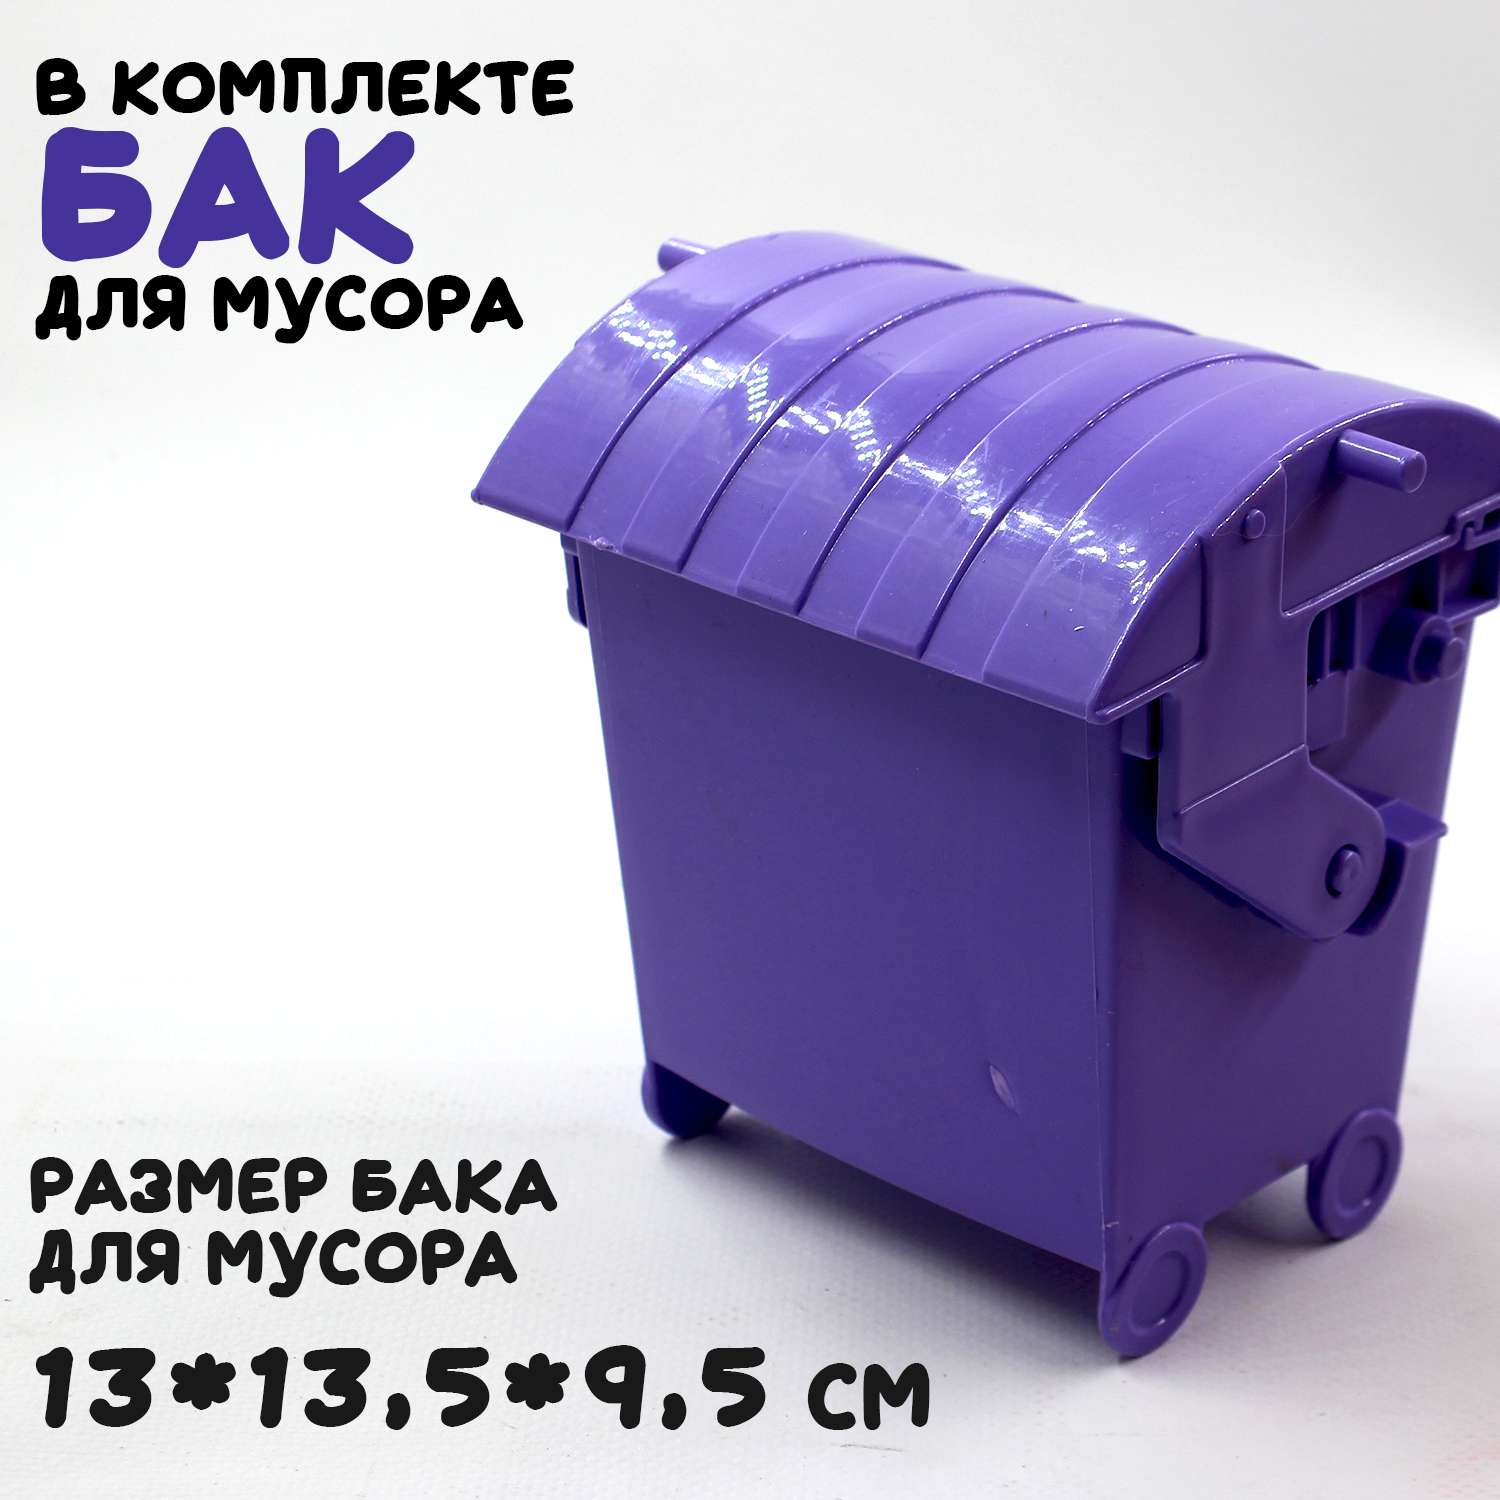 Большая машина Атлантис Colorplast мусоровоз длина 54 см 0633/03 - фото 6